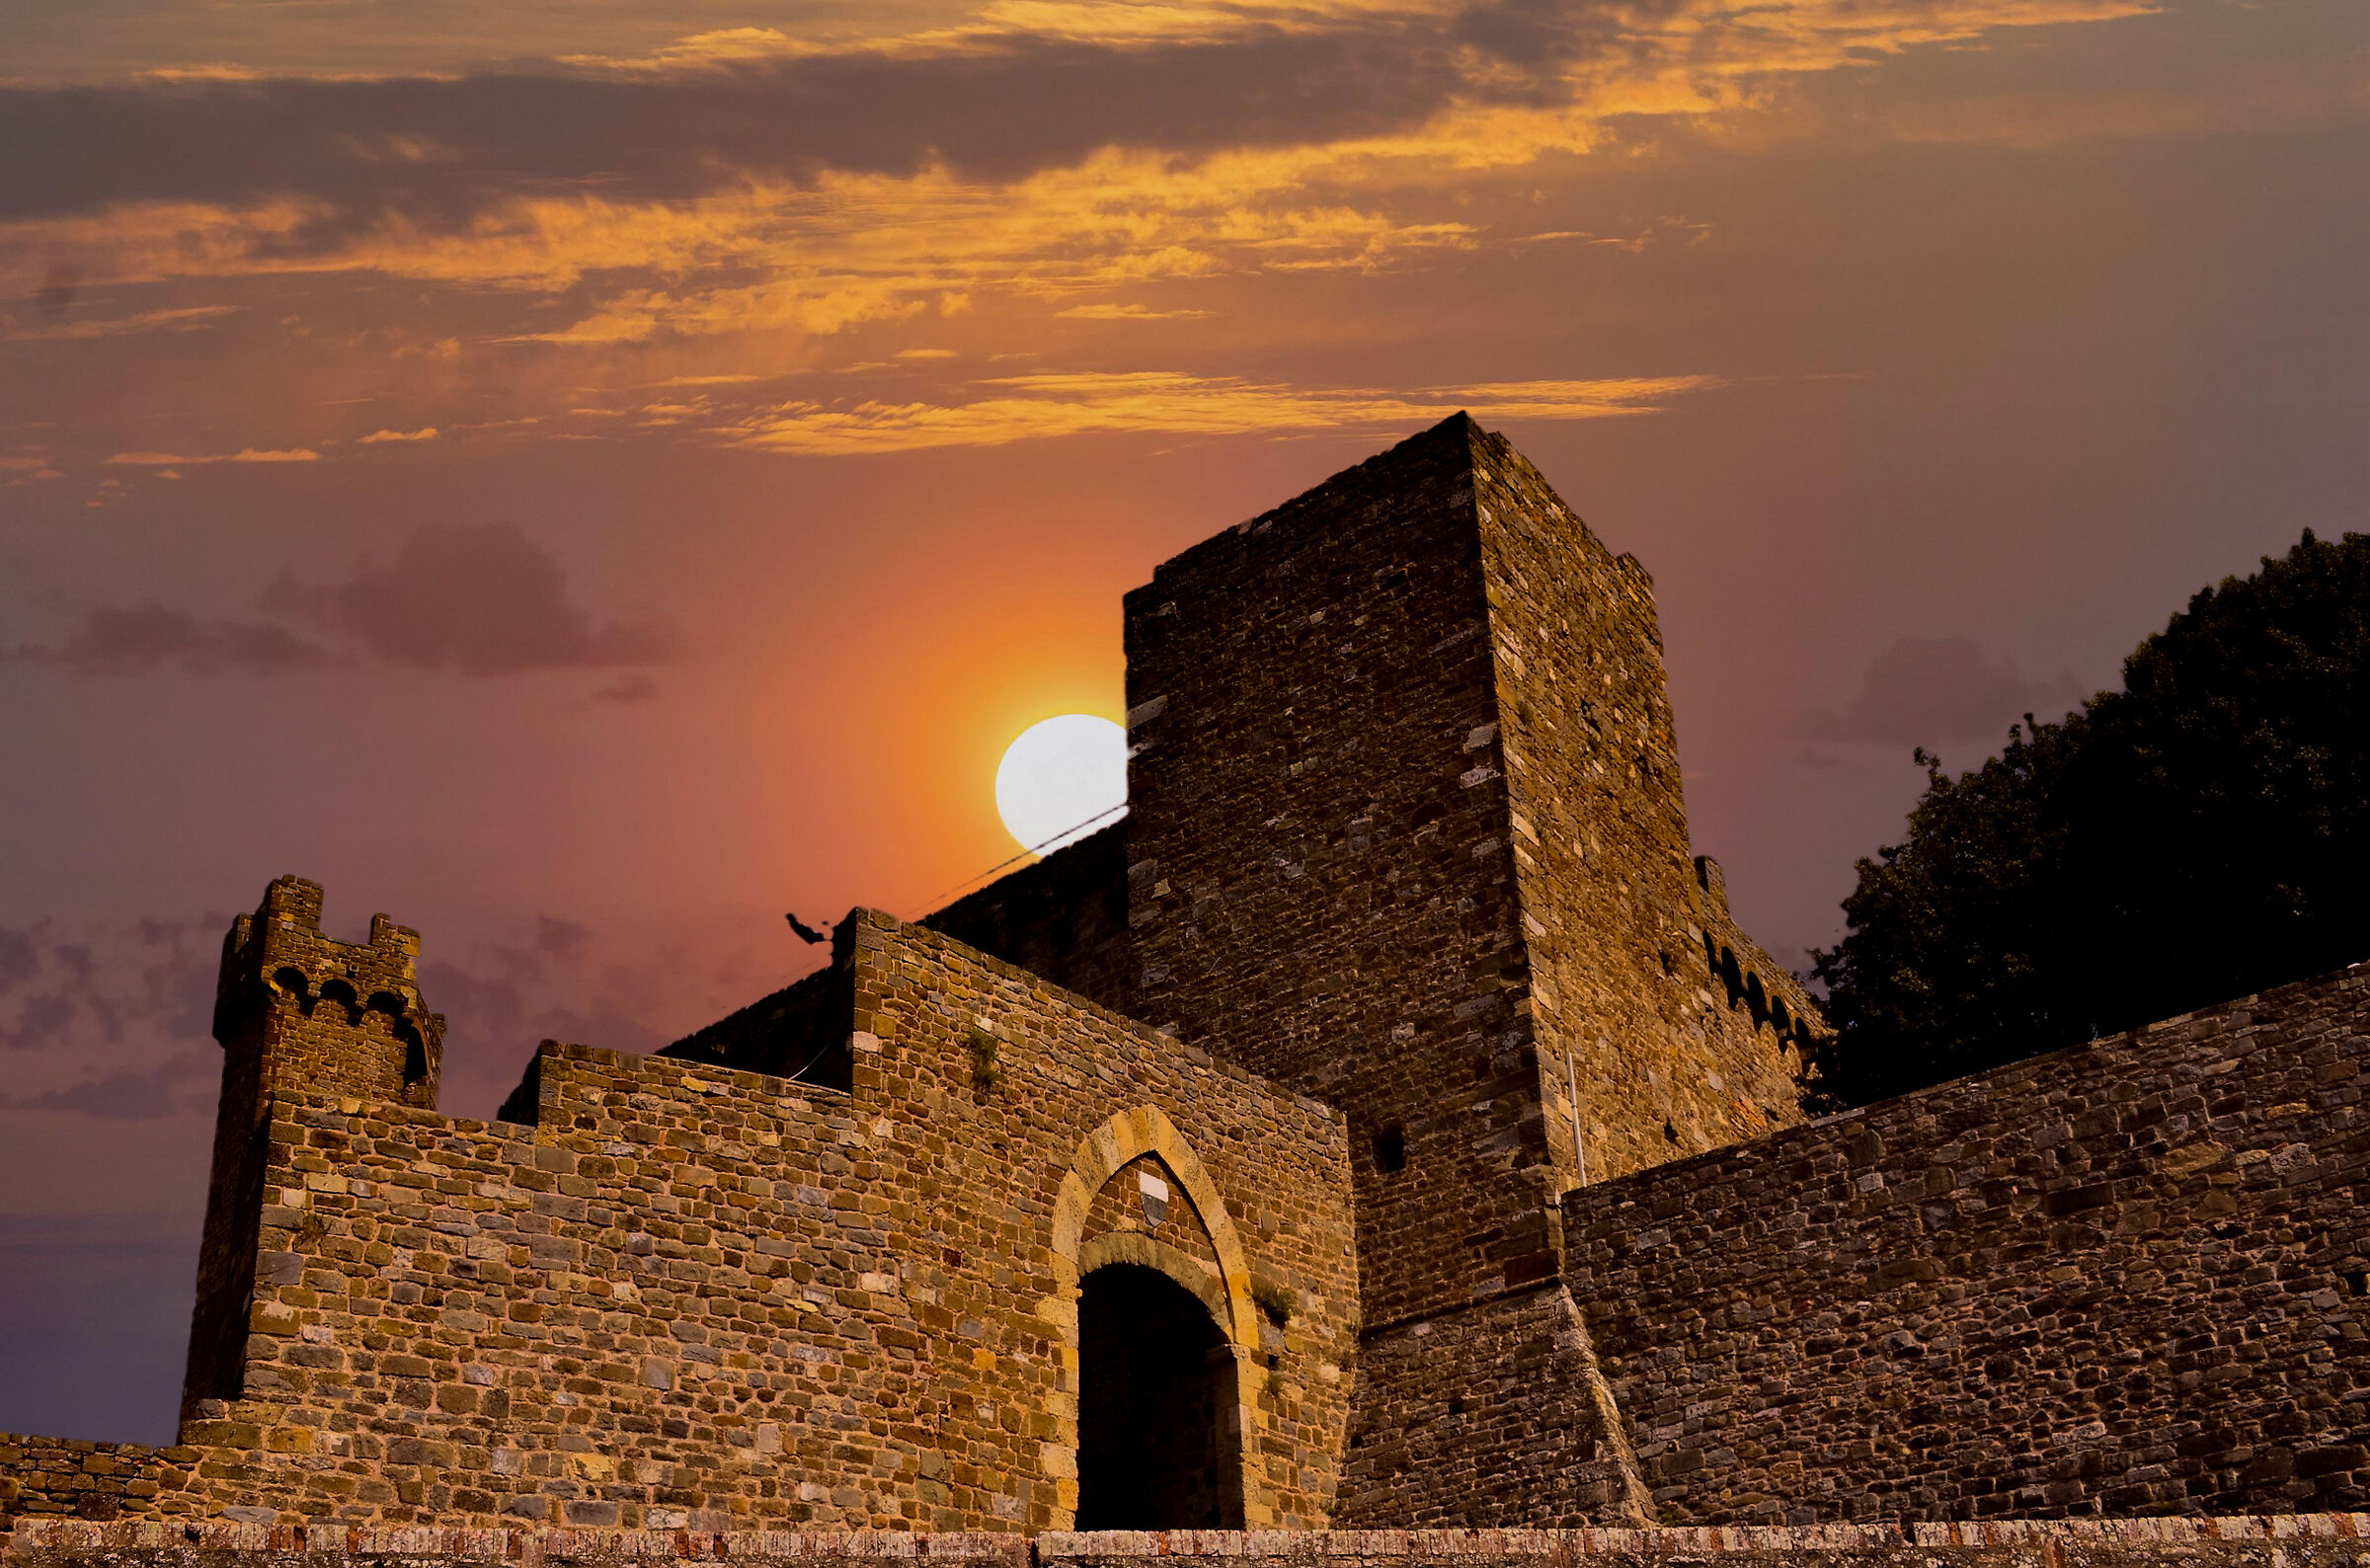 Tramonto sul castello di Montalcino...